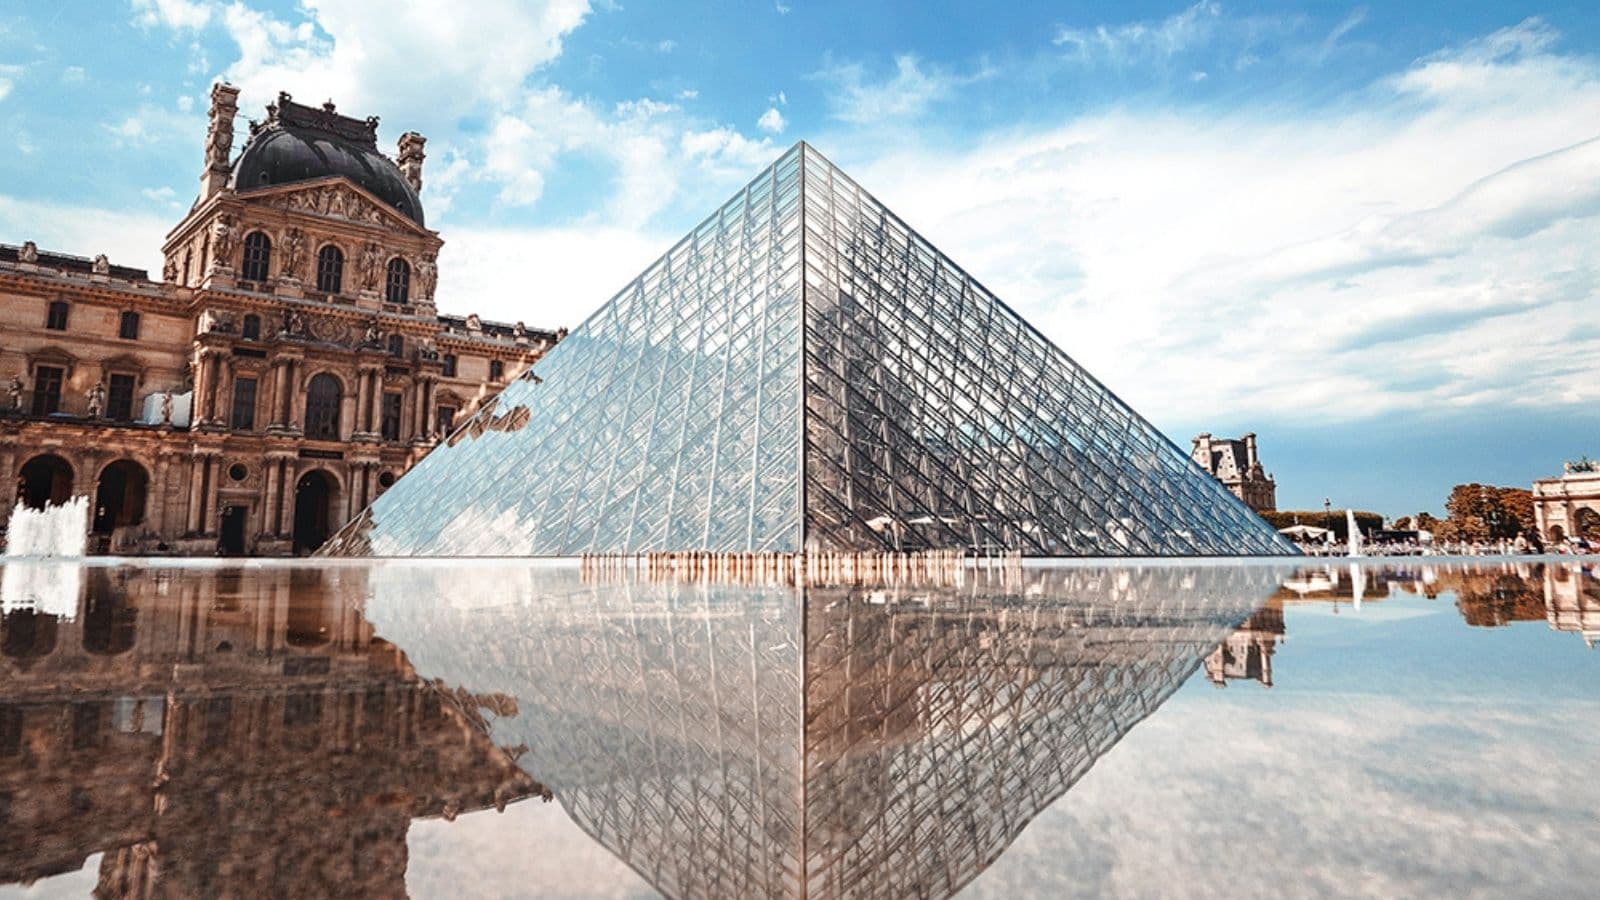 Giờ đây bạn có thể “tham quan” bảo tàng Louvre mà không tốn phí